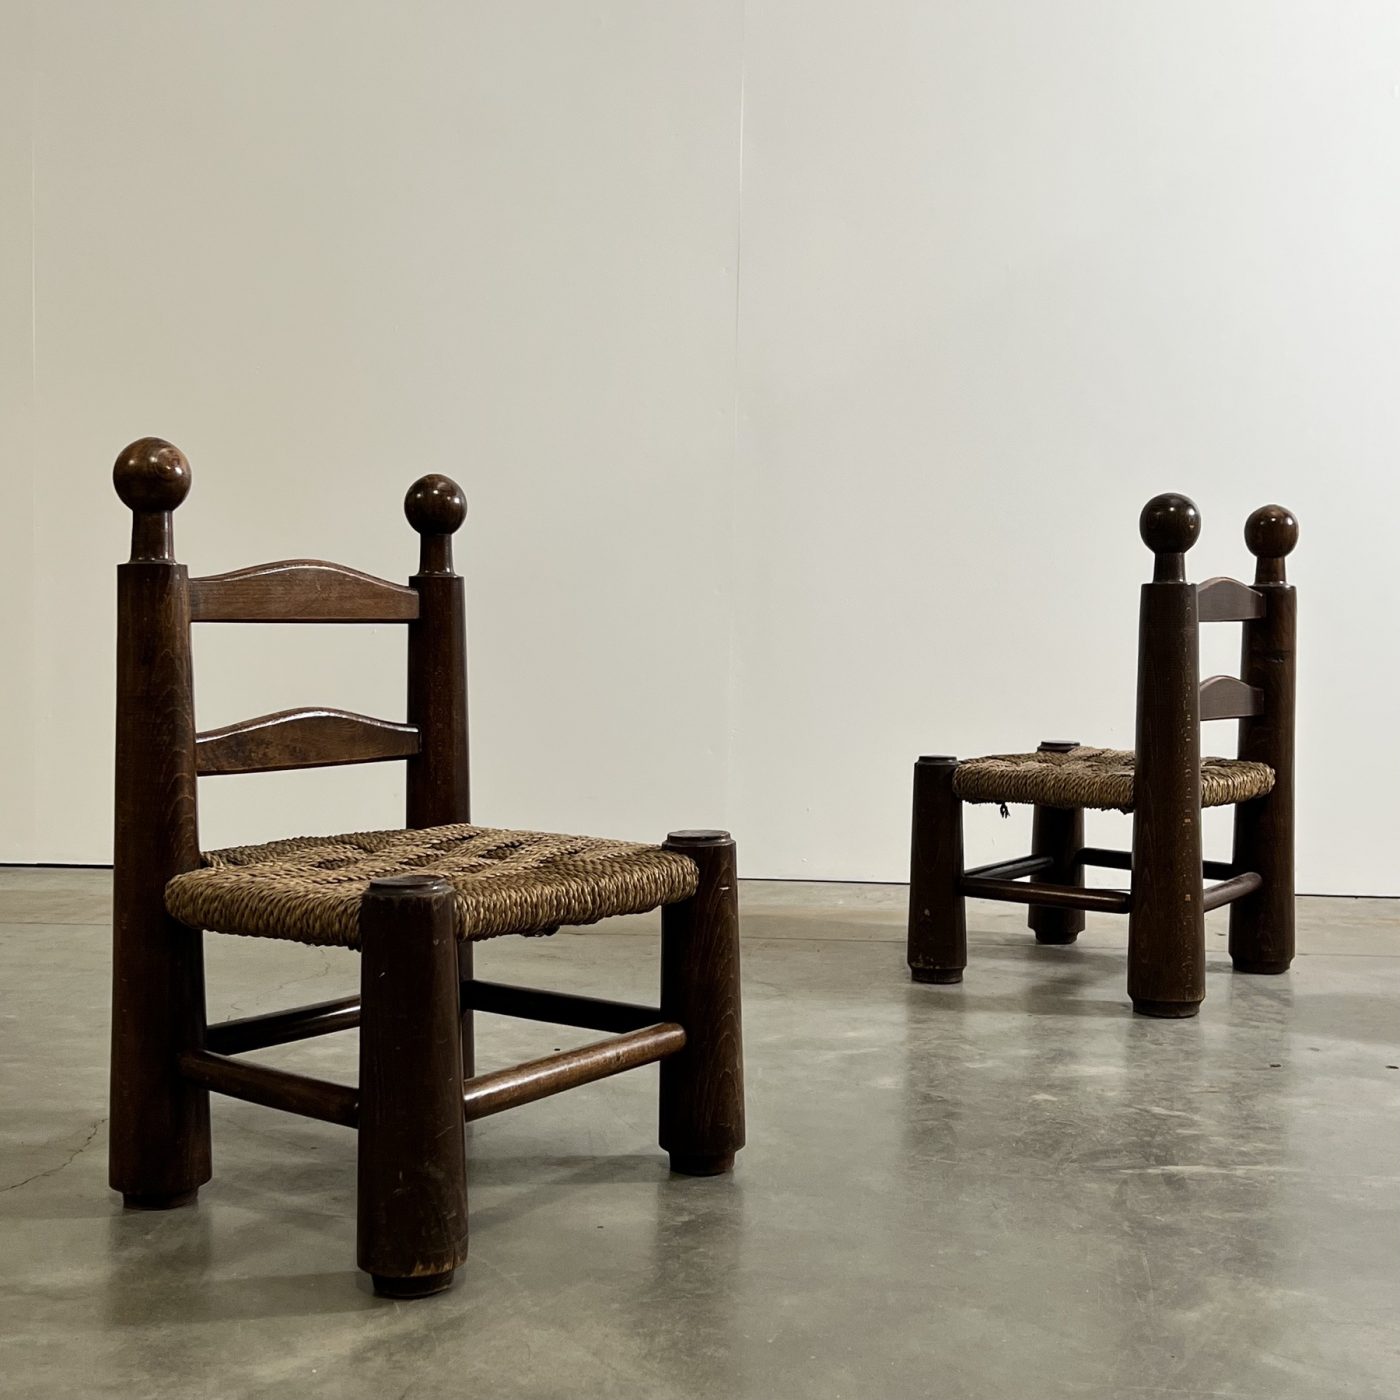 objet-vagabond-dudouyt-chairs0002